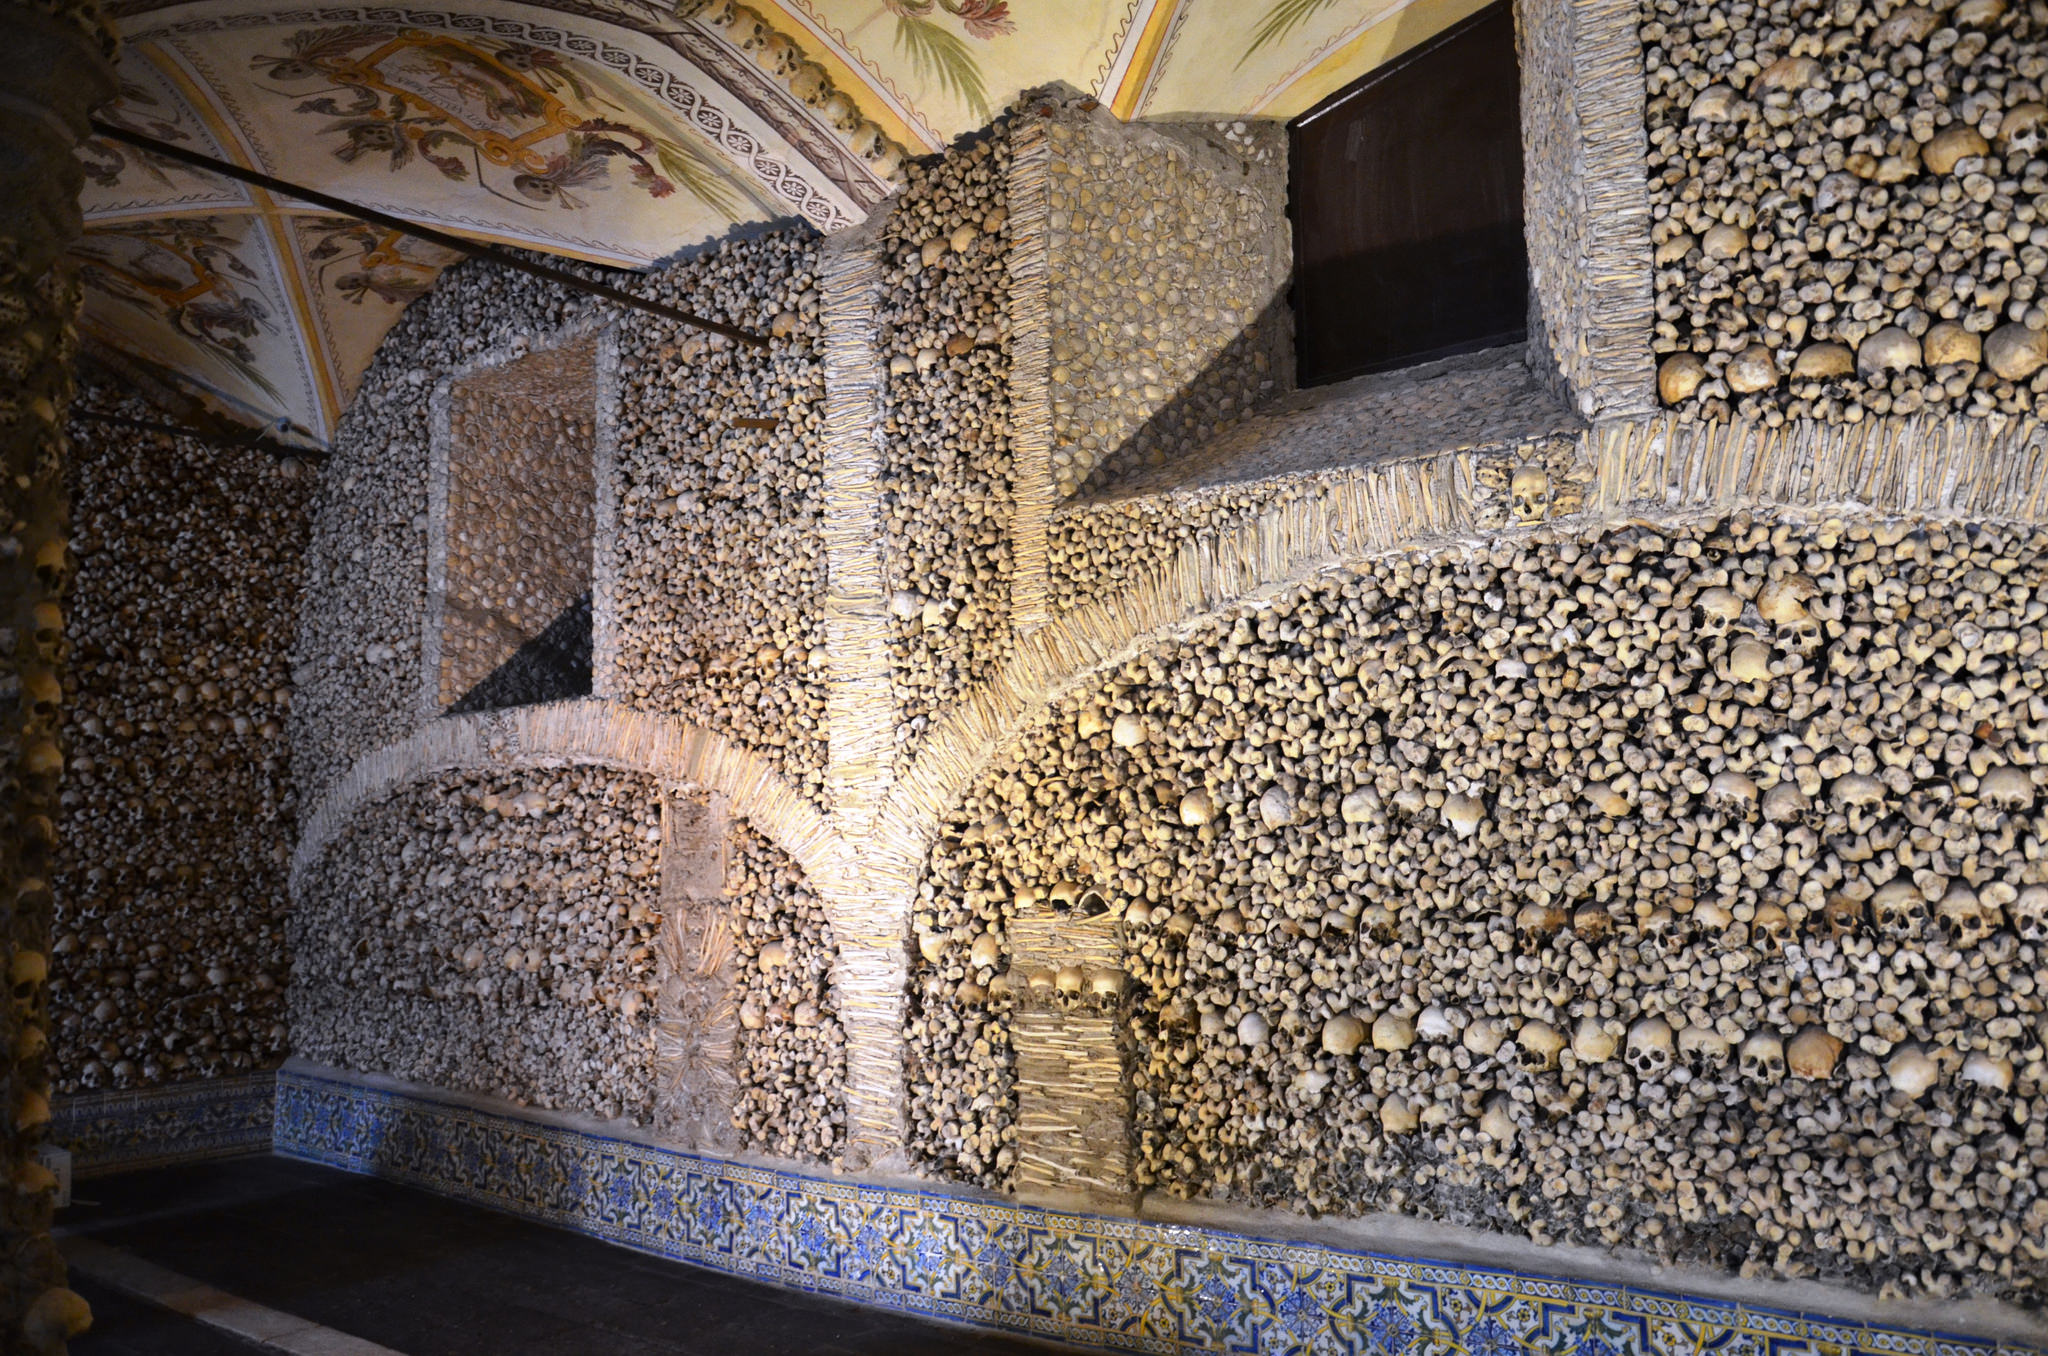 Capela dos osos, skull and bones chapel in Evora, Portugal